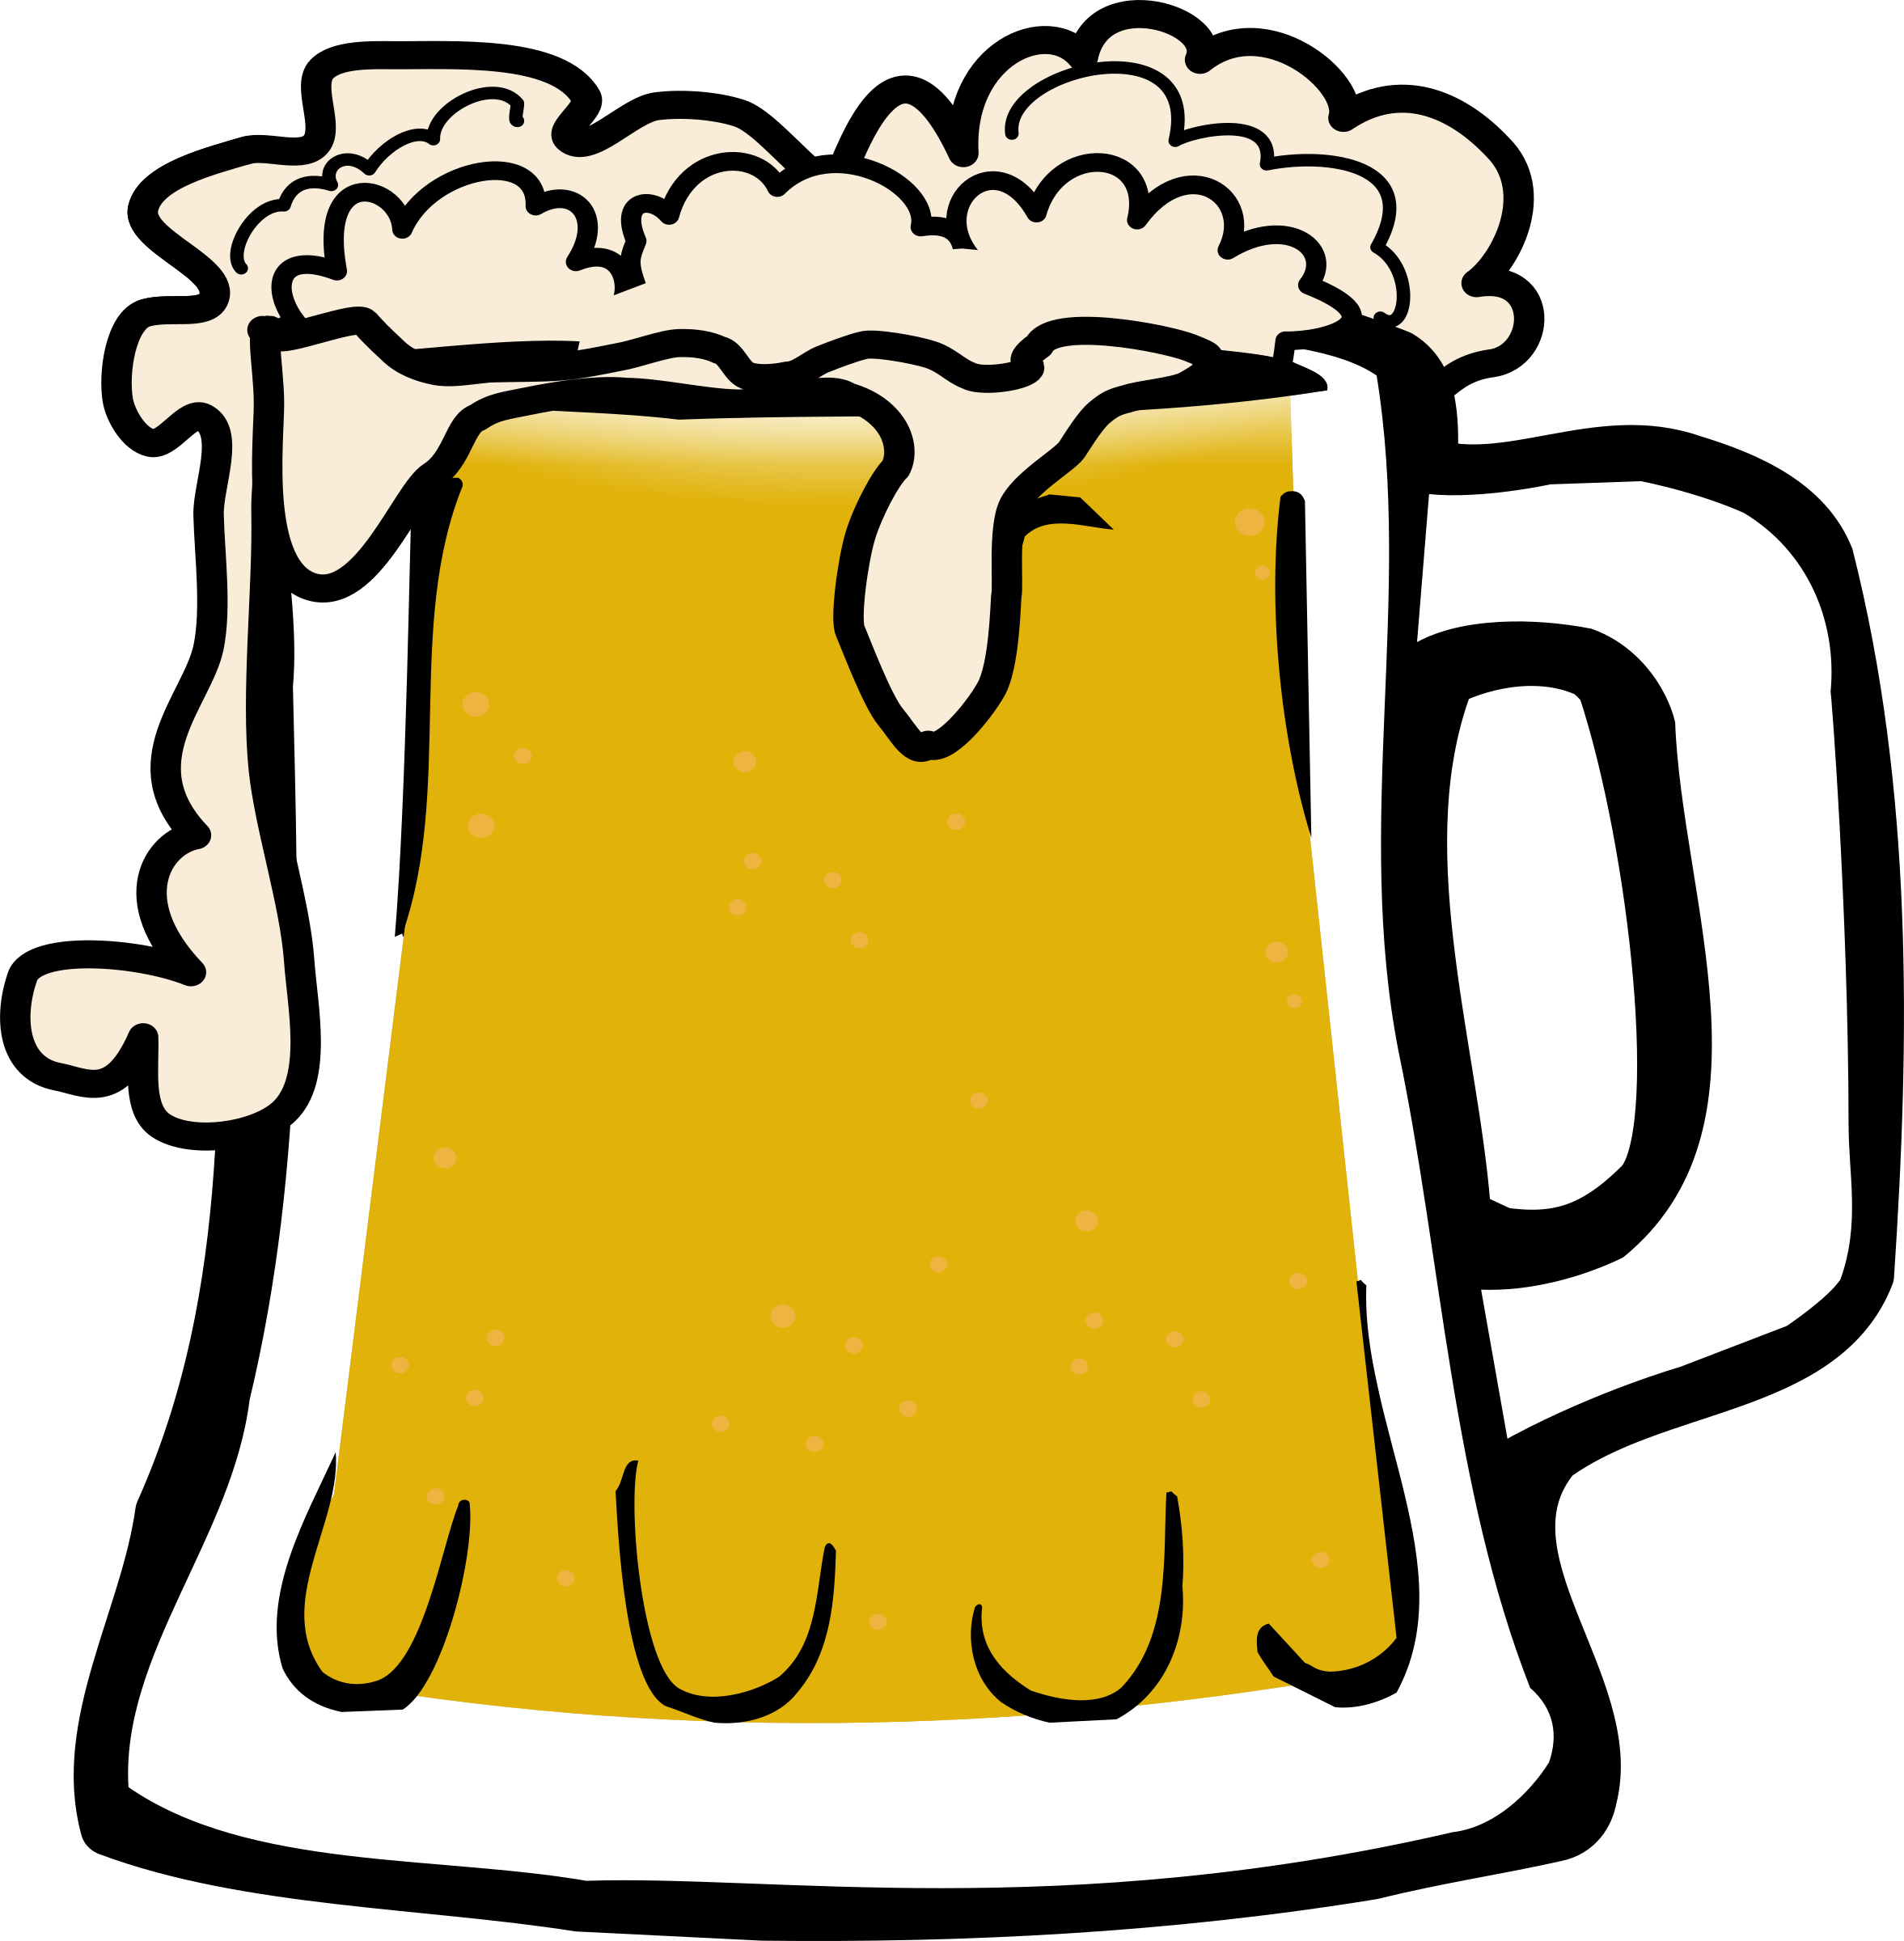 Big Image - Cartoon Beer Mug (2354x2400)